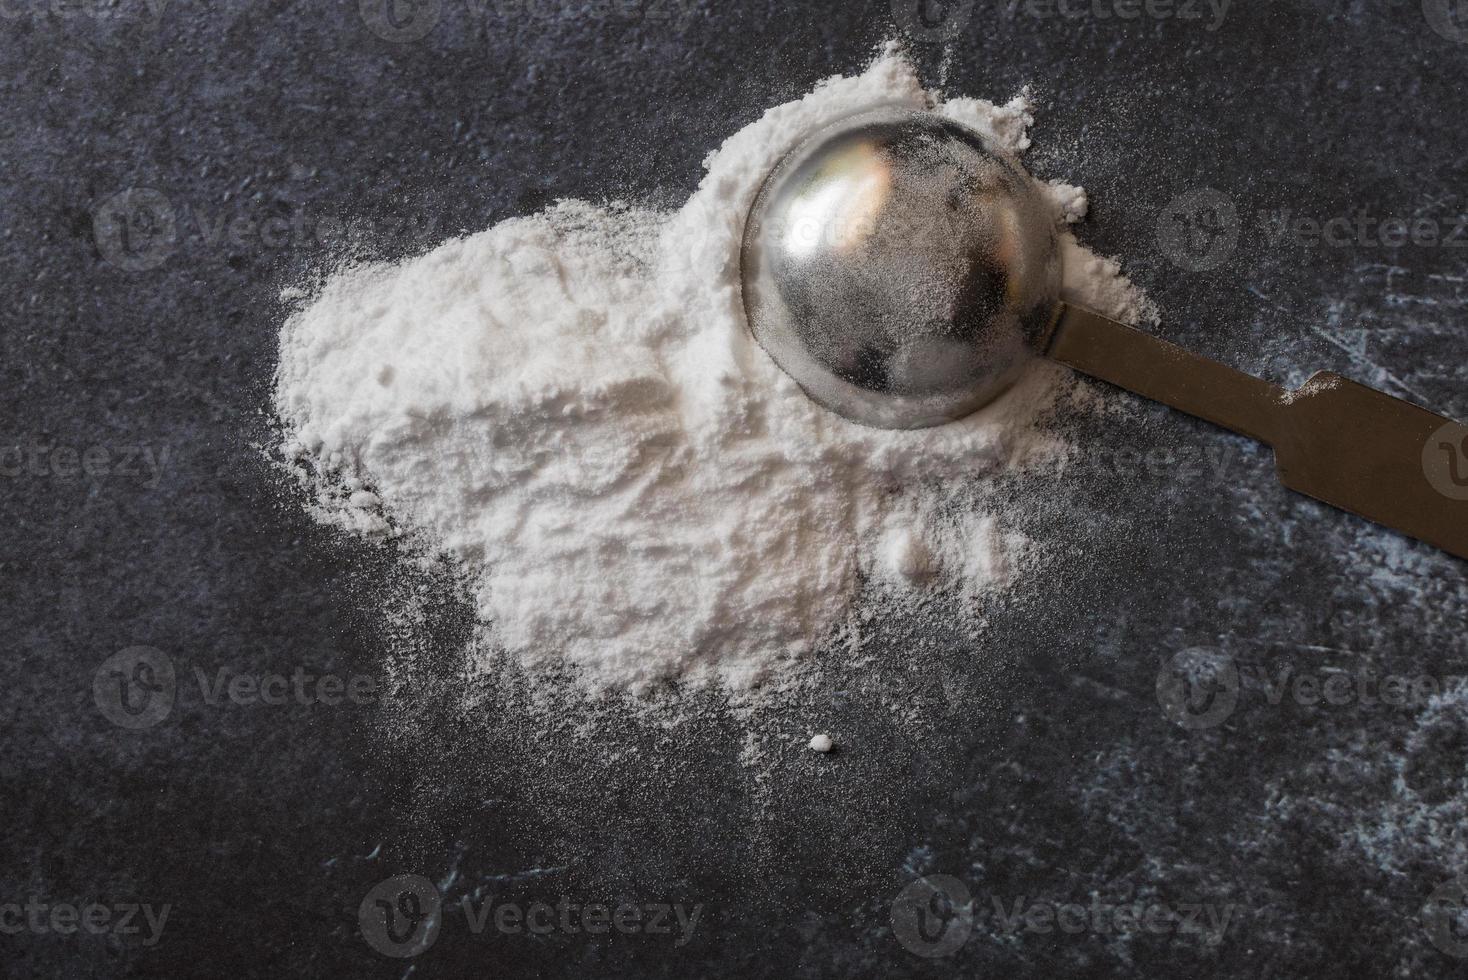 bakning soda spillts från en tesked foto